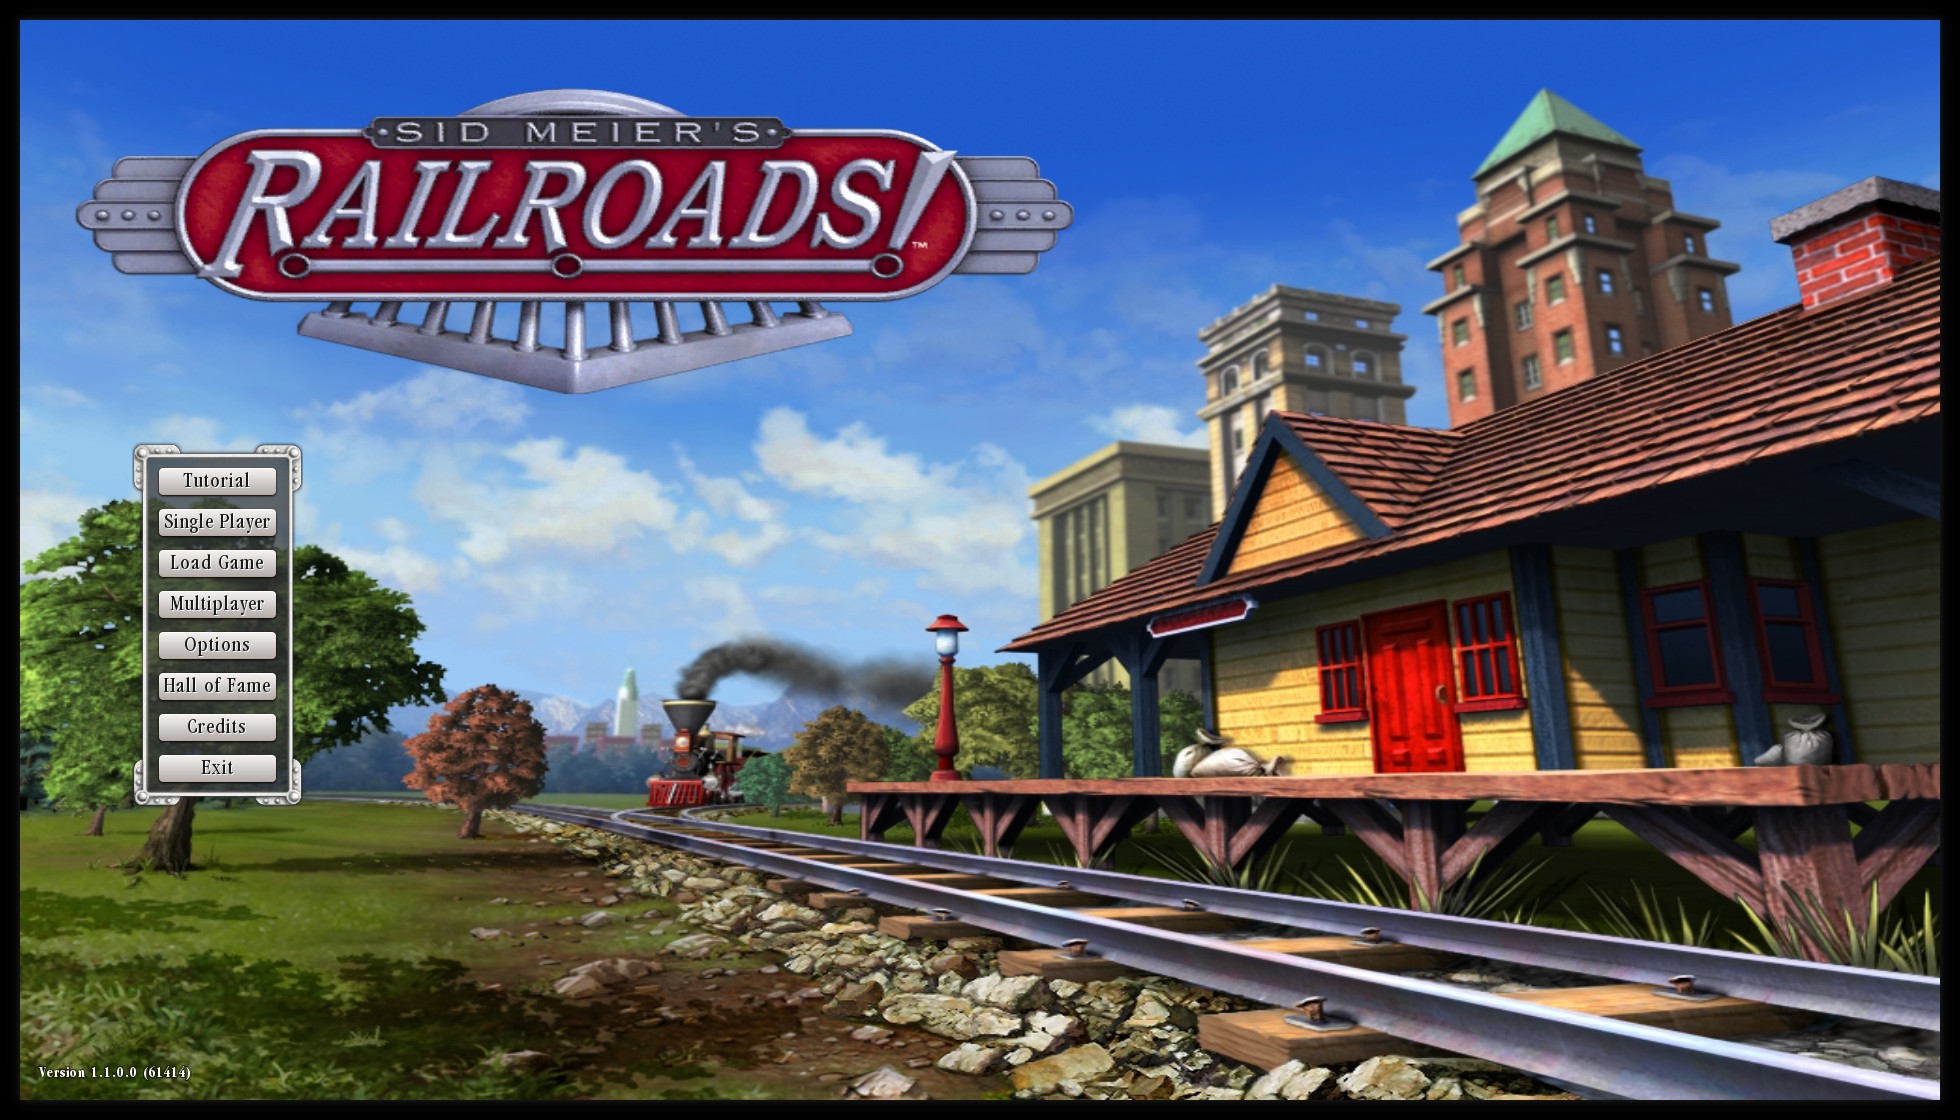 Sid Meier’s Railroads! PC Latest Version Free Download